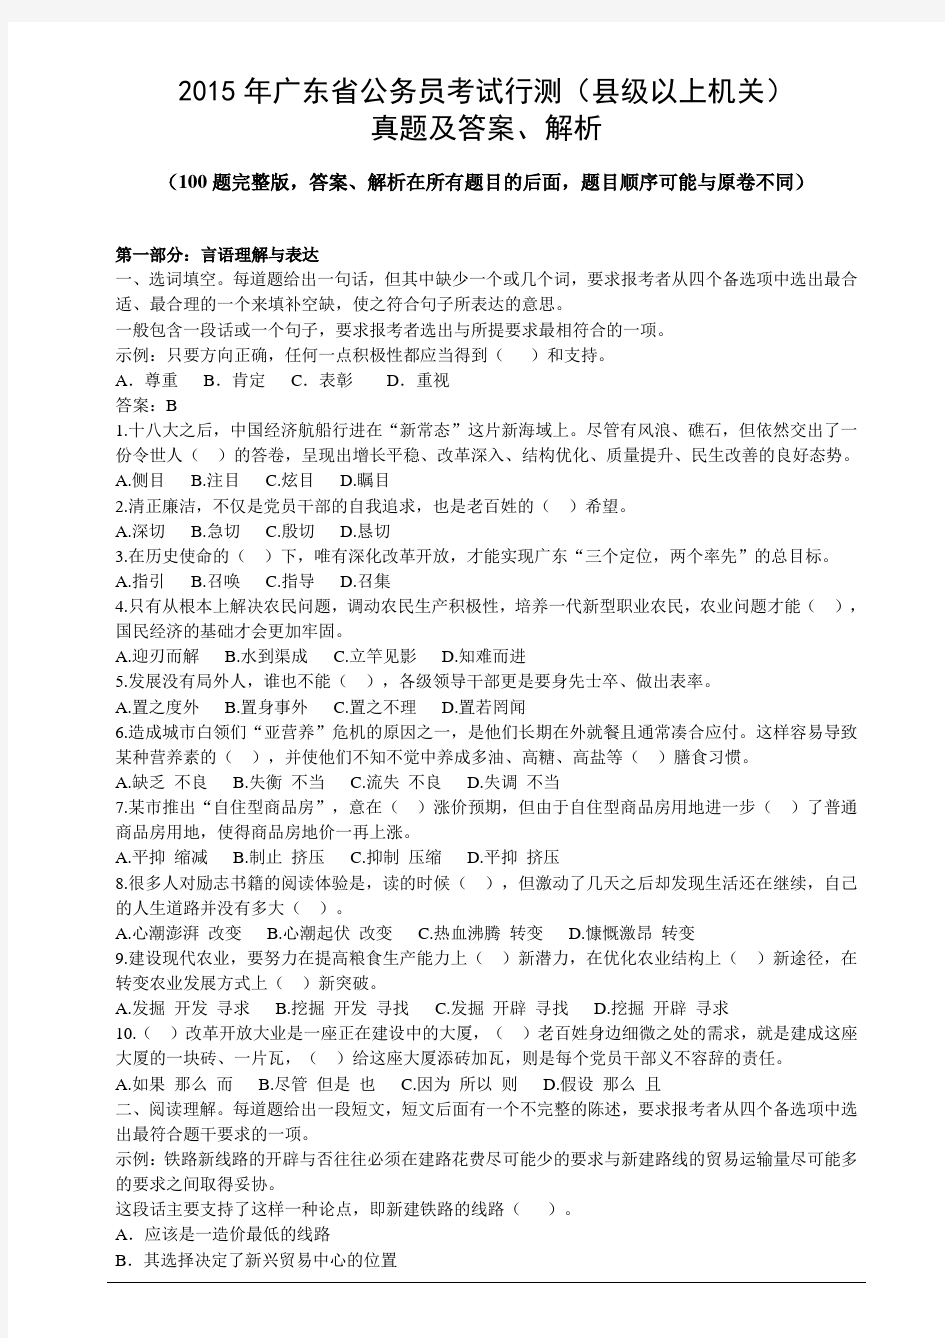 2015年广东省县级以上机关公务员考试行测真题及答案、解析(100题完整版)